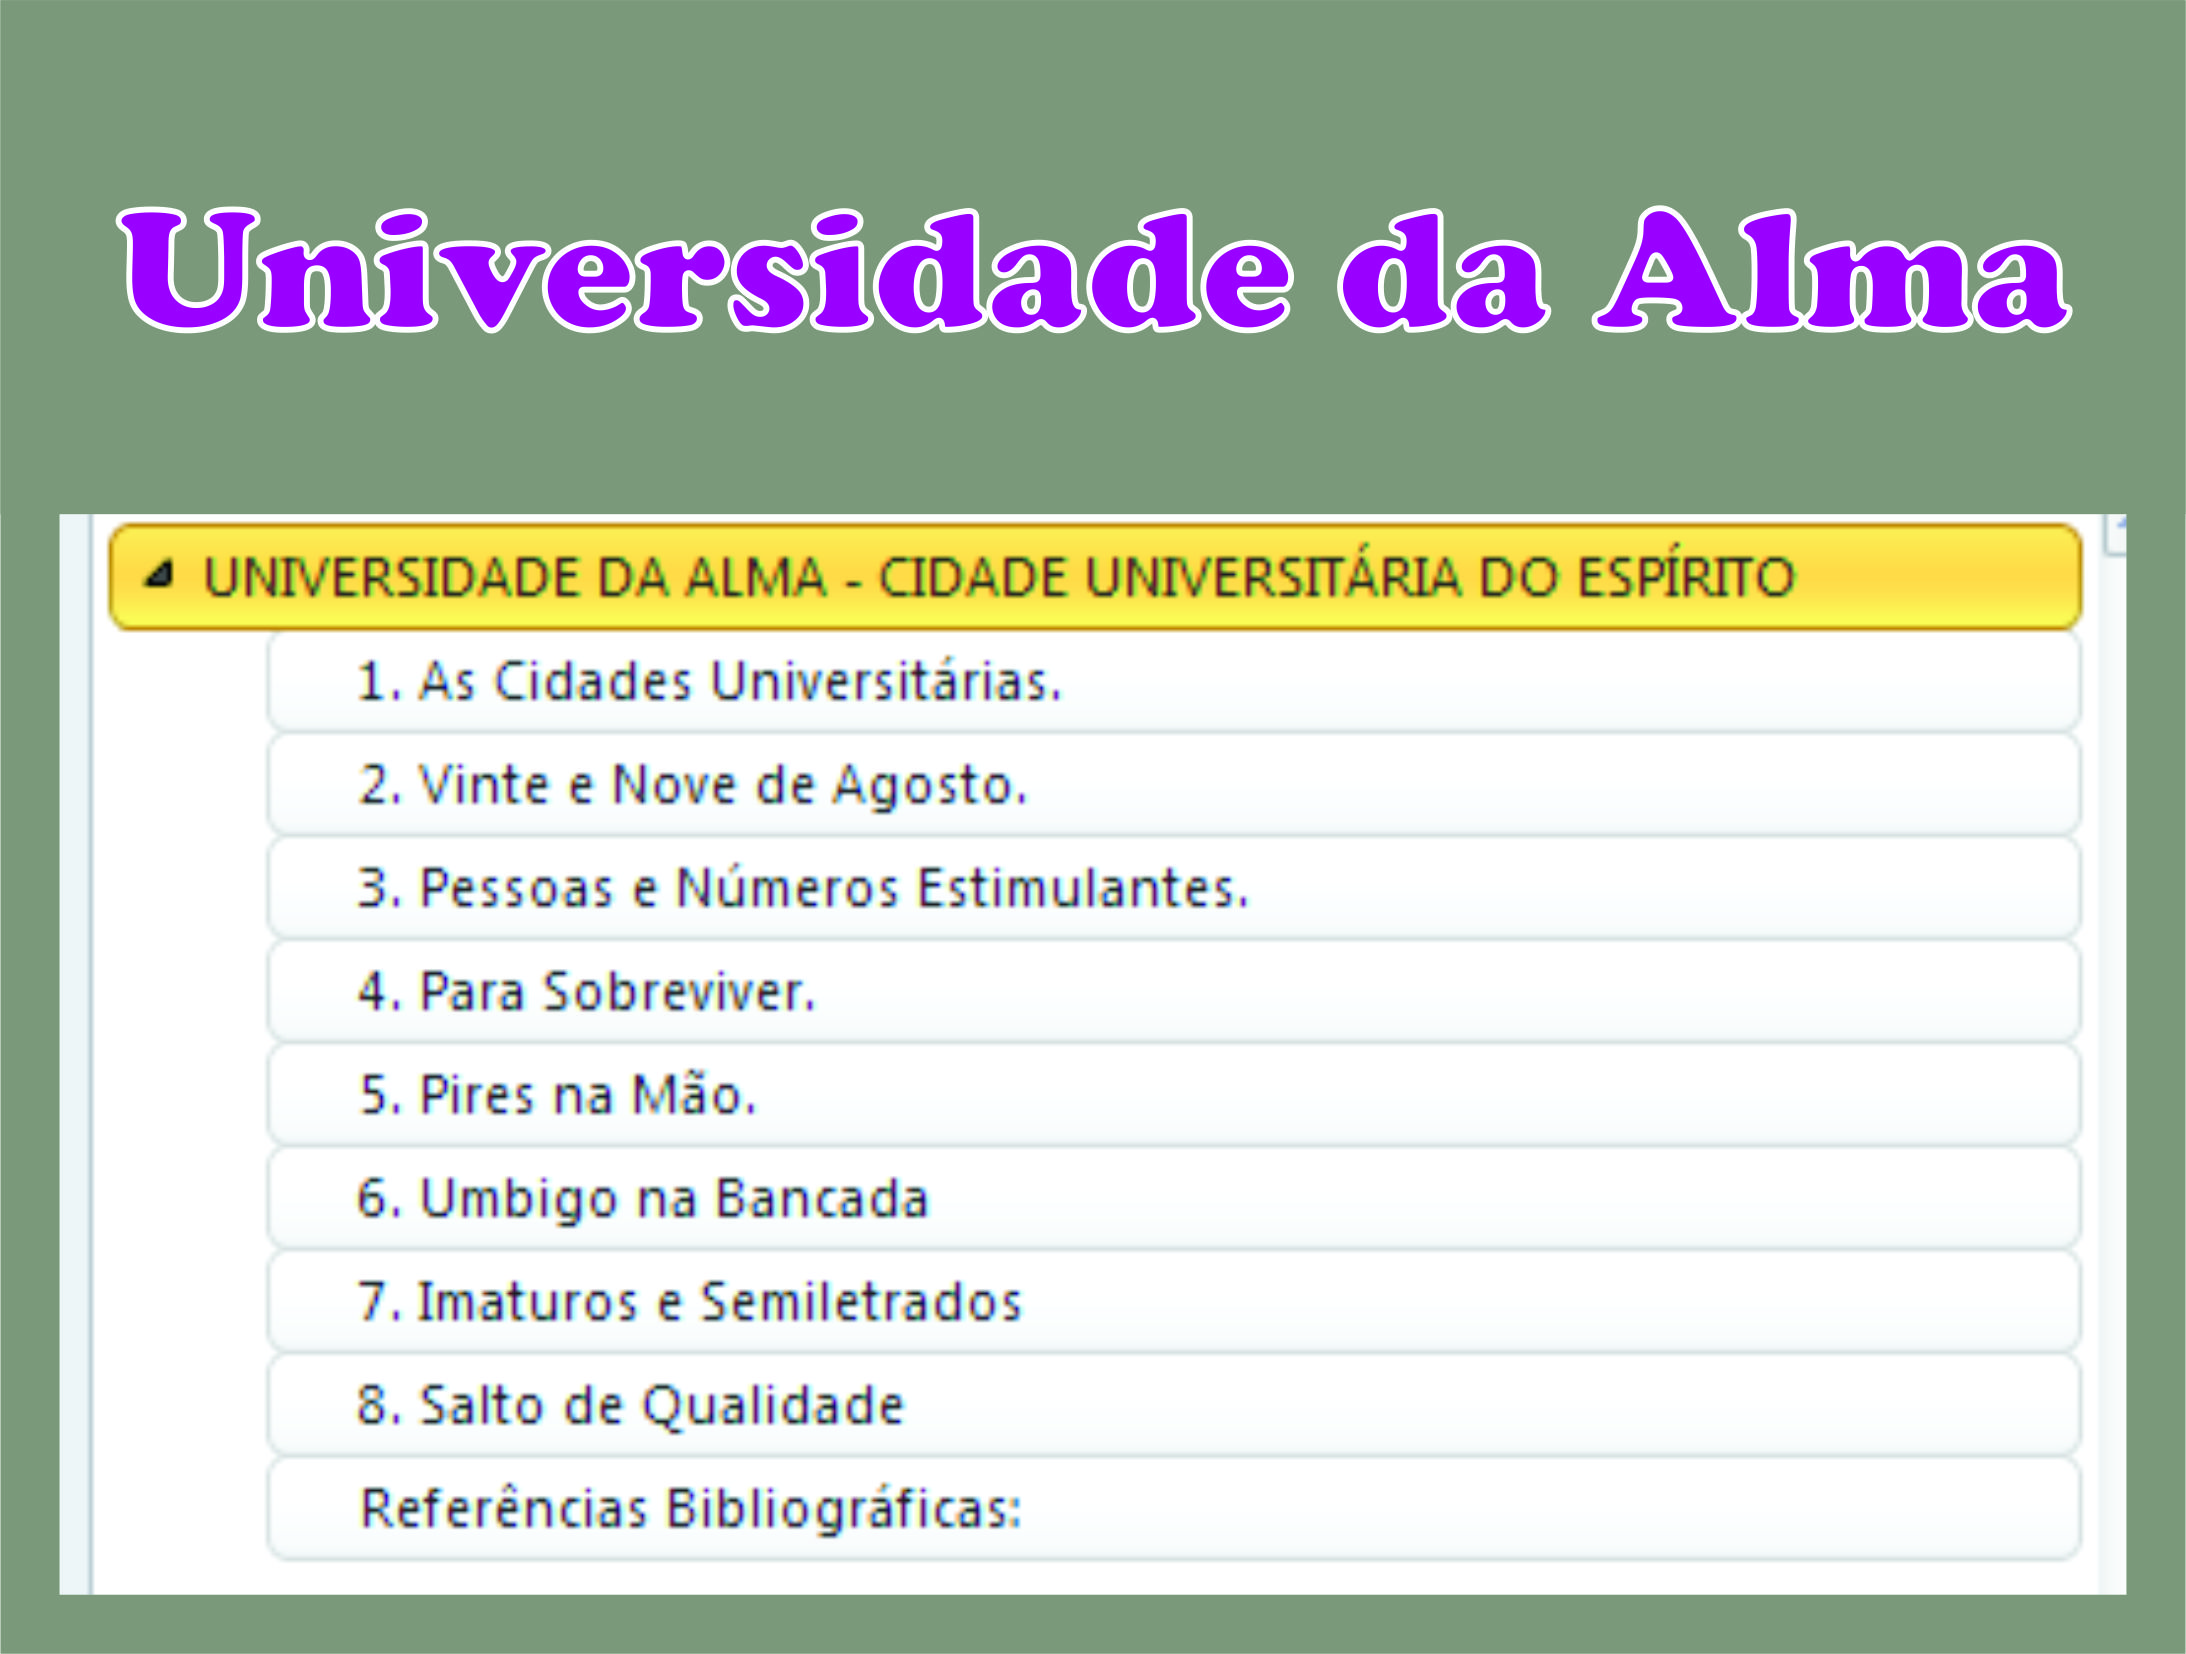 20130506_Universidade_Alma